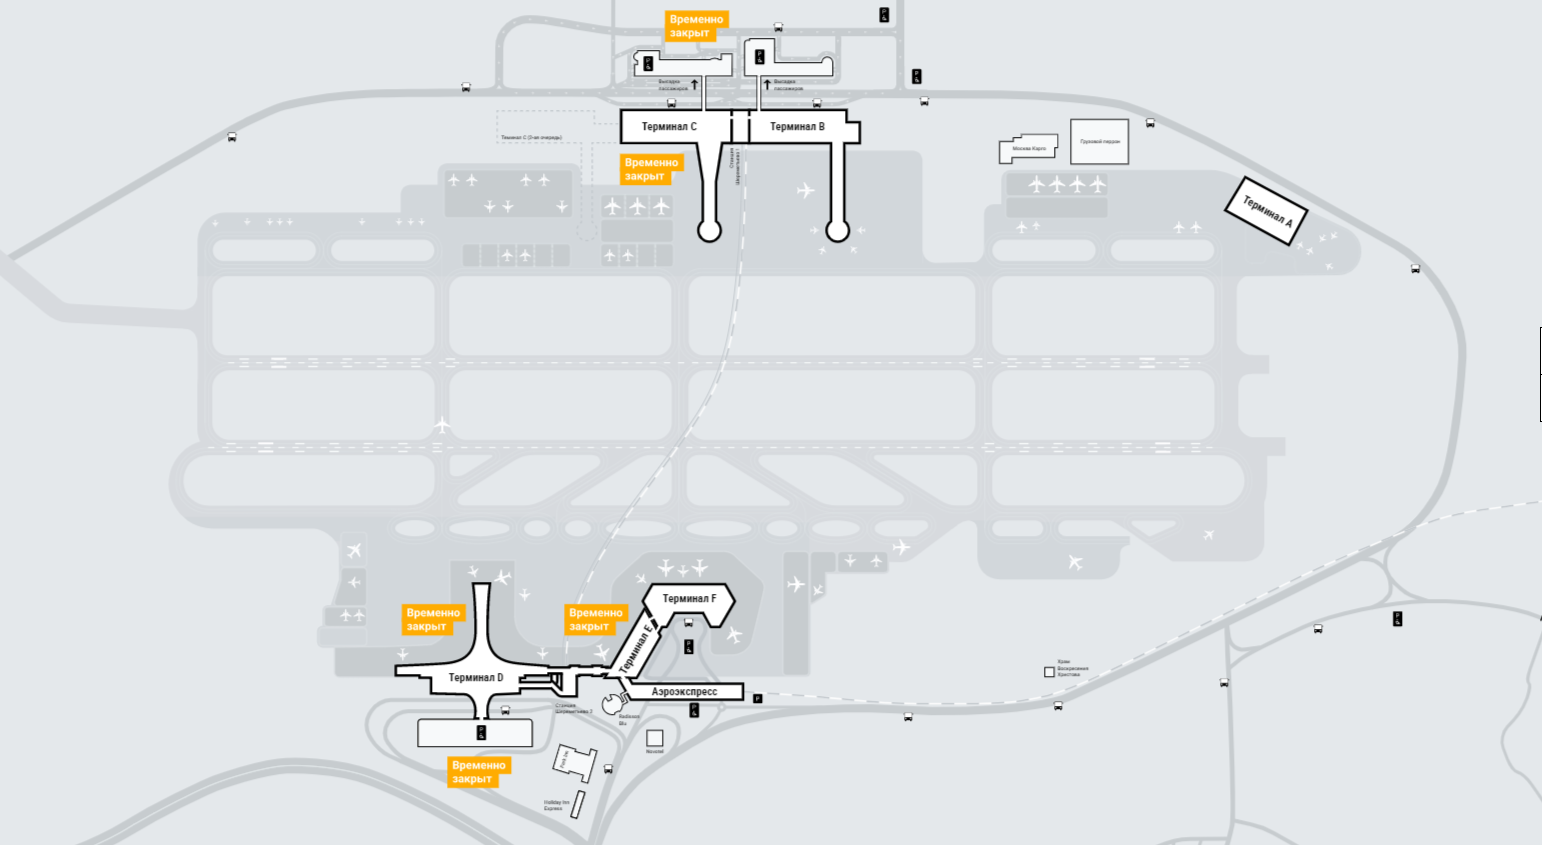 Из терминала b в терминал c шереметьево. Схема аэропорта Шереметьево с терминалами. План Шереметьево аэропорт схема. План аэропорта Шереметьево терминал b. План аэропорта Шереметьево с терминалами.